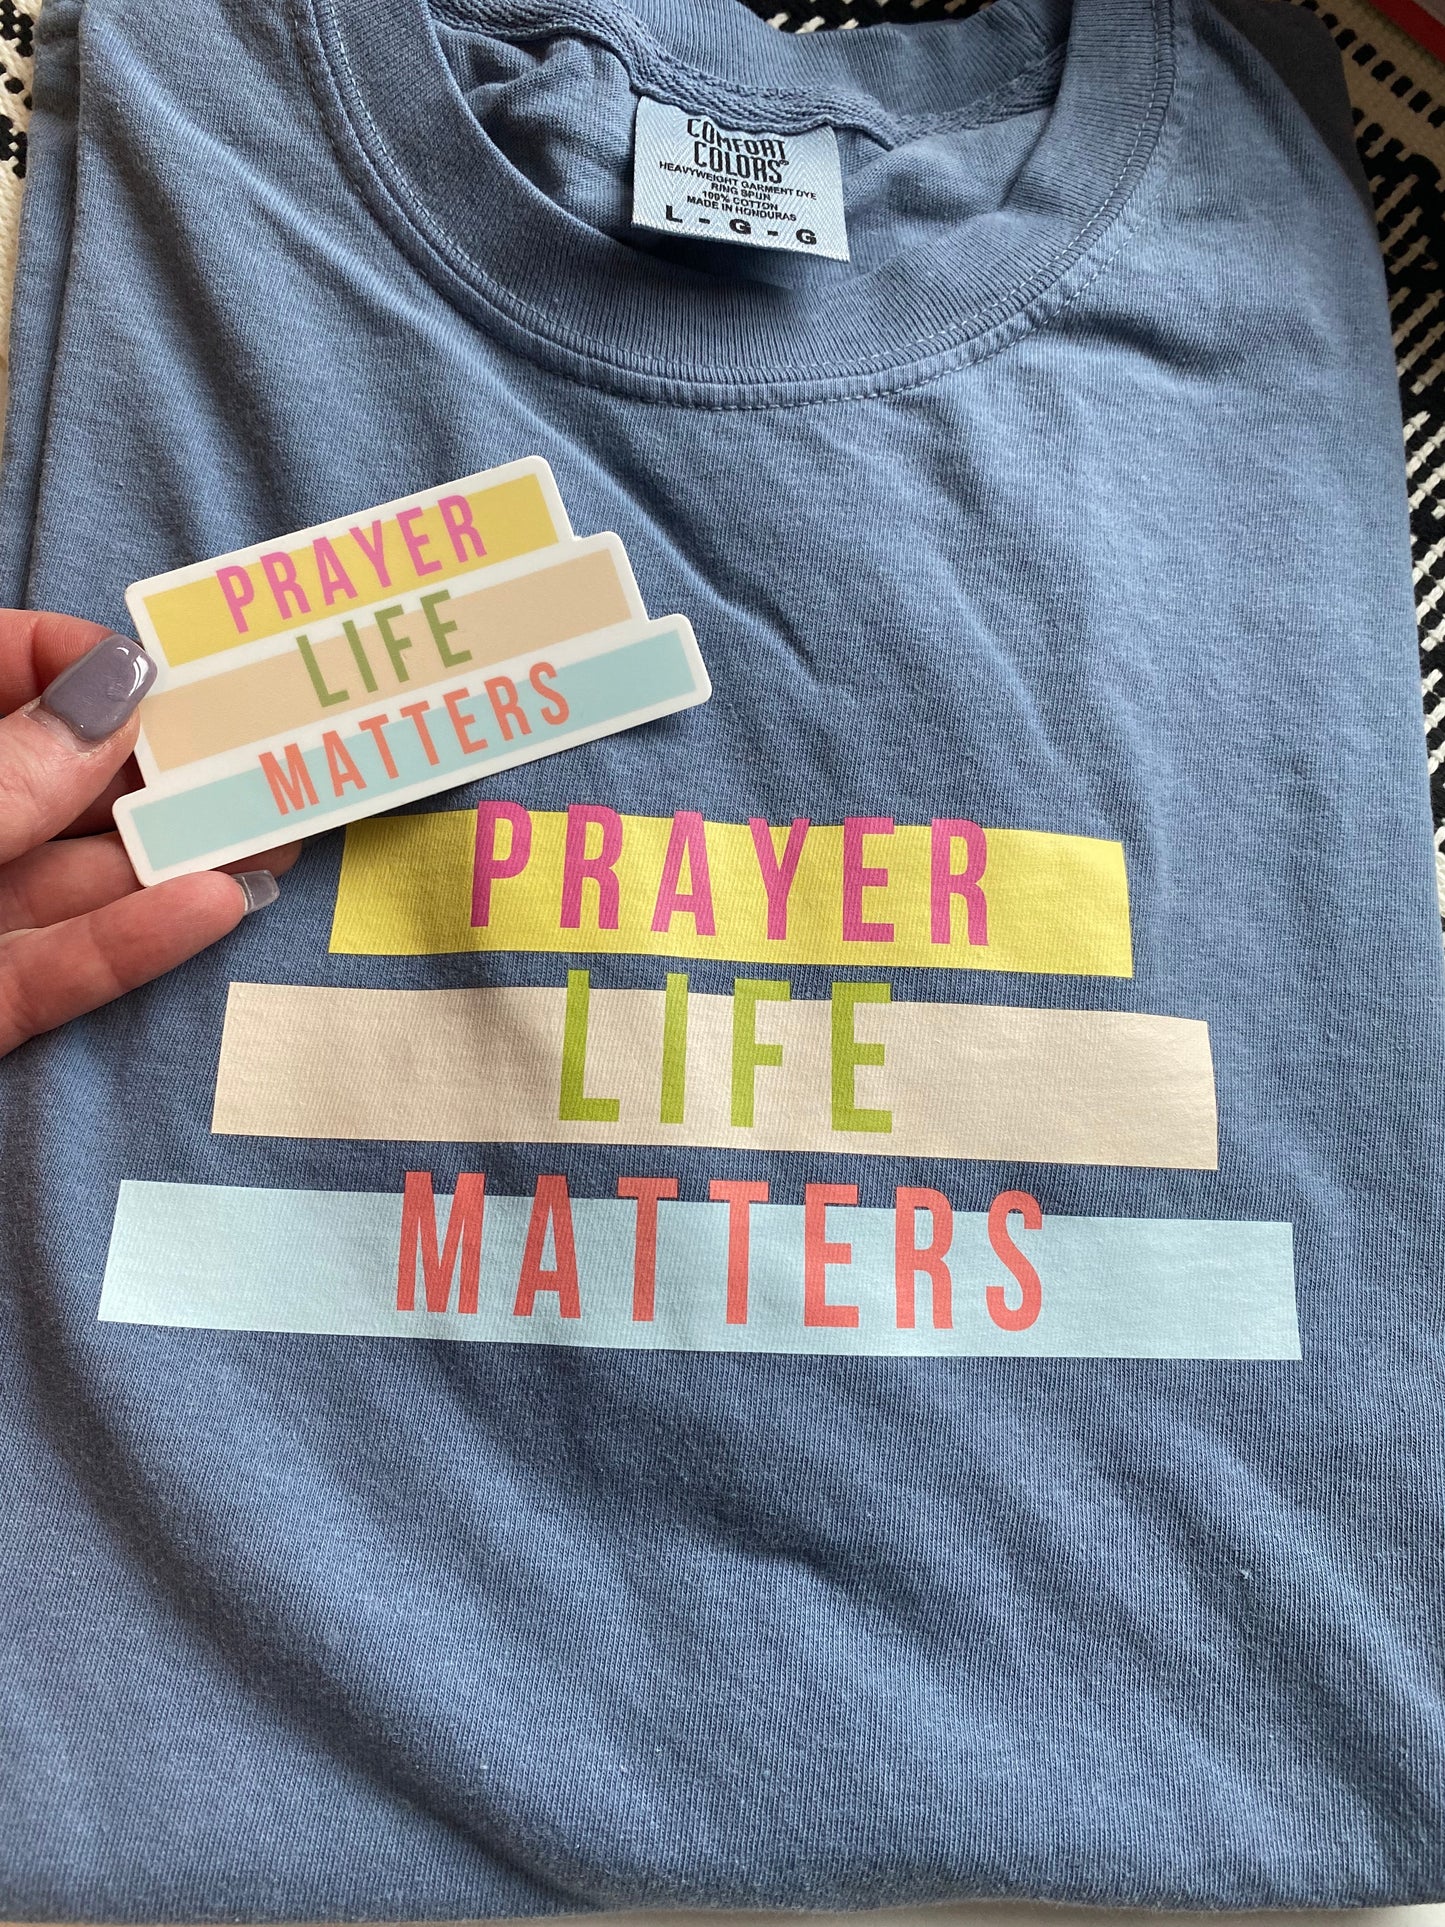 Prayer Life Matters Sticker (4" x 4")